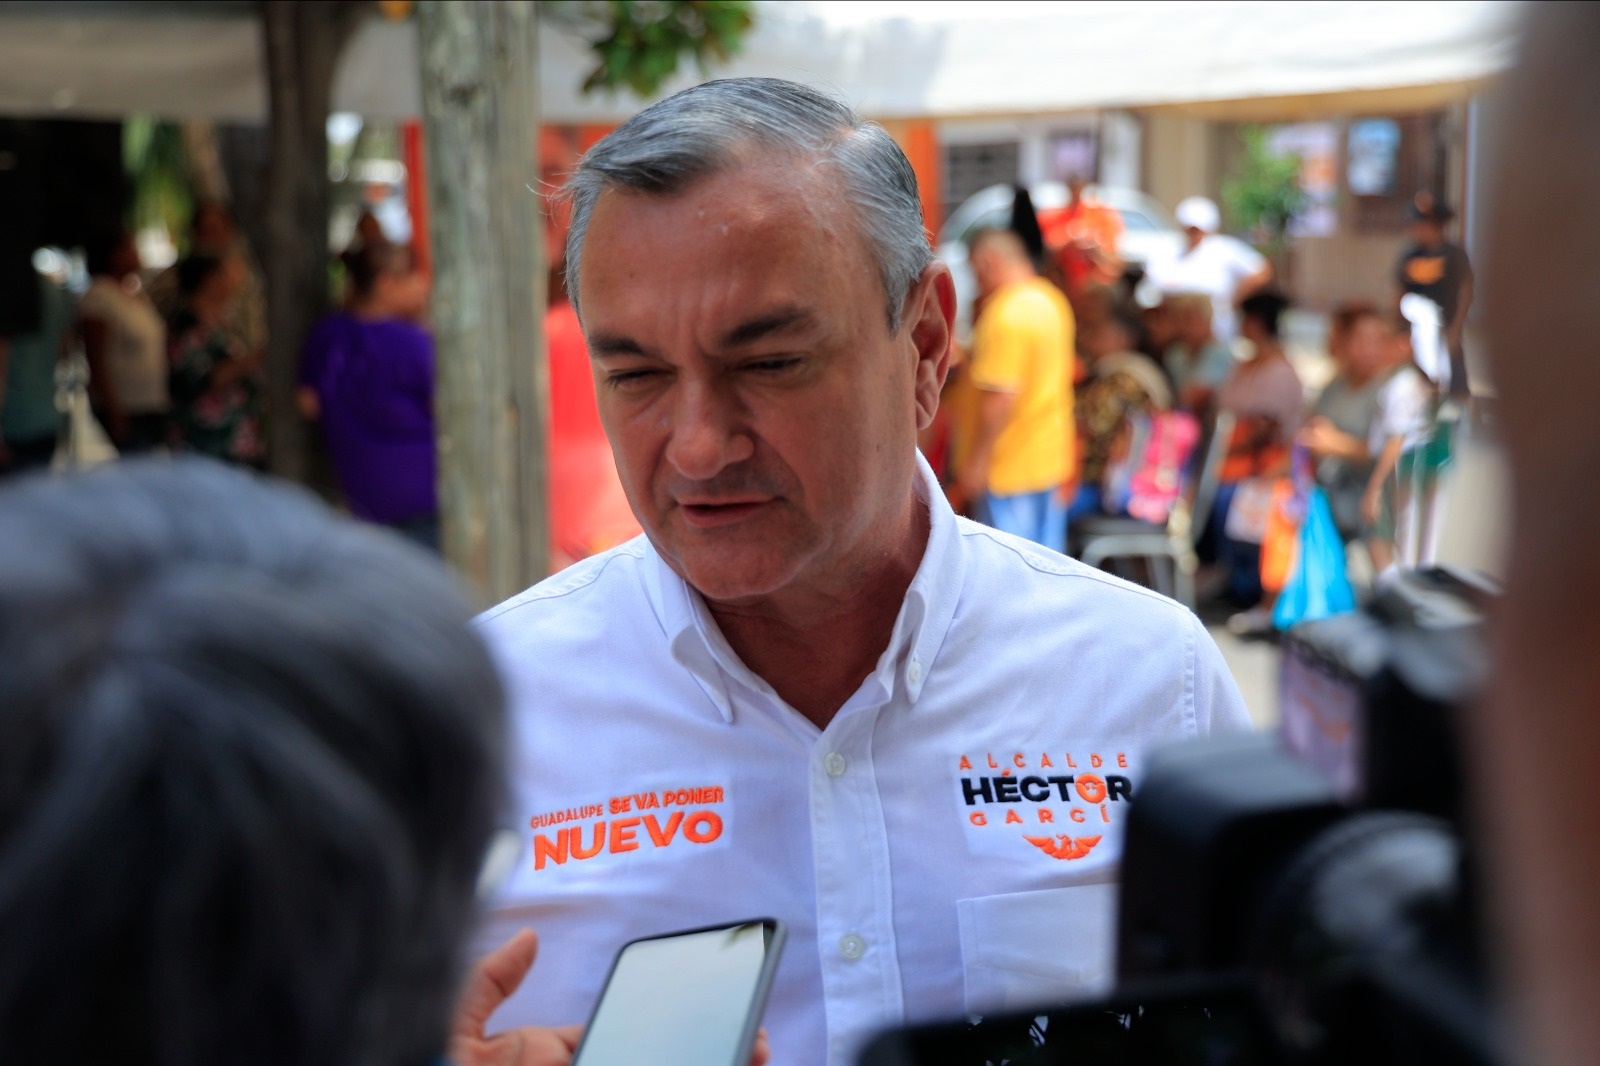 Emprender Hctor Garca gestiones para regularizar predios en Guadalupe 